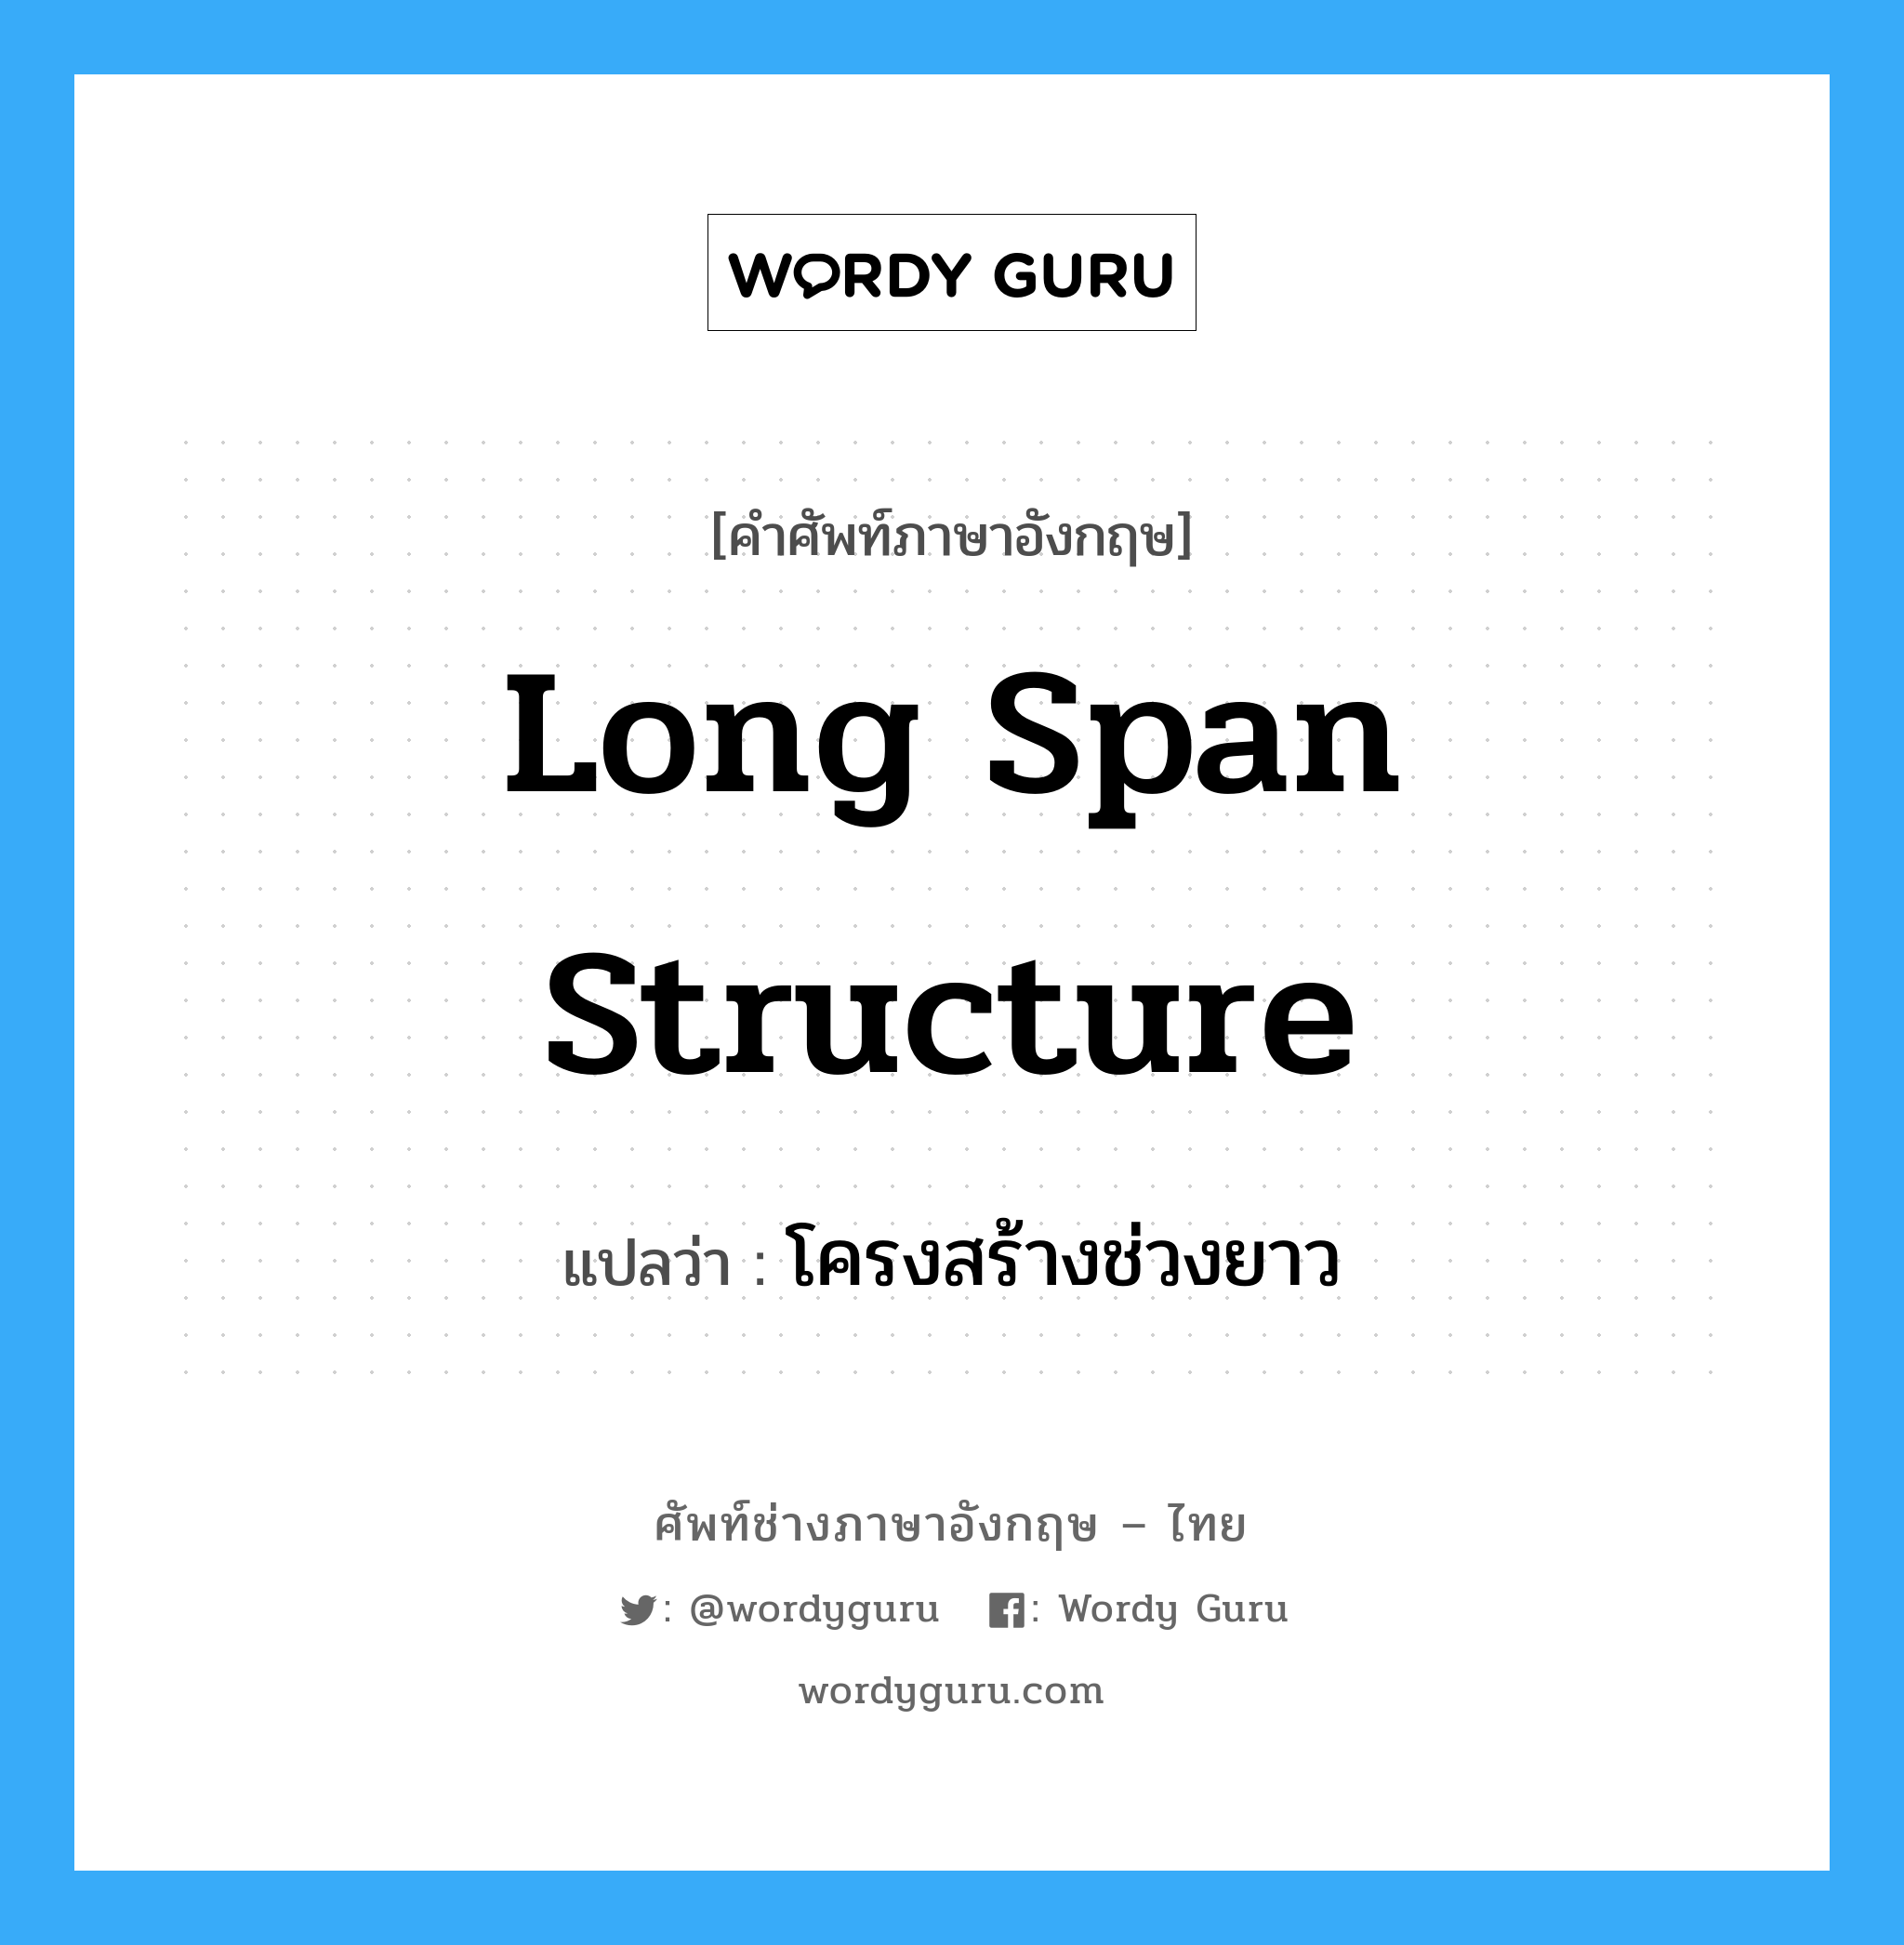 โครงสร้างช่วงยาว ภาษาอังกฤษ?, คำศัพท์ช่างภาษาอังกฤษ - ไทย โครงสร้างช่วงยาว คำศัพท์ภาษาอังกฤษ โครงสร้างช่วงยาว แปลว่า long span structure